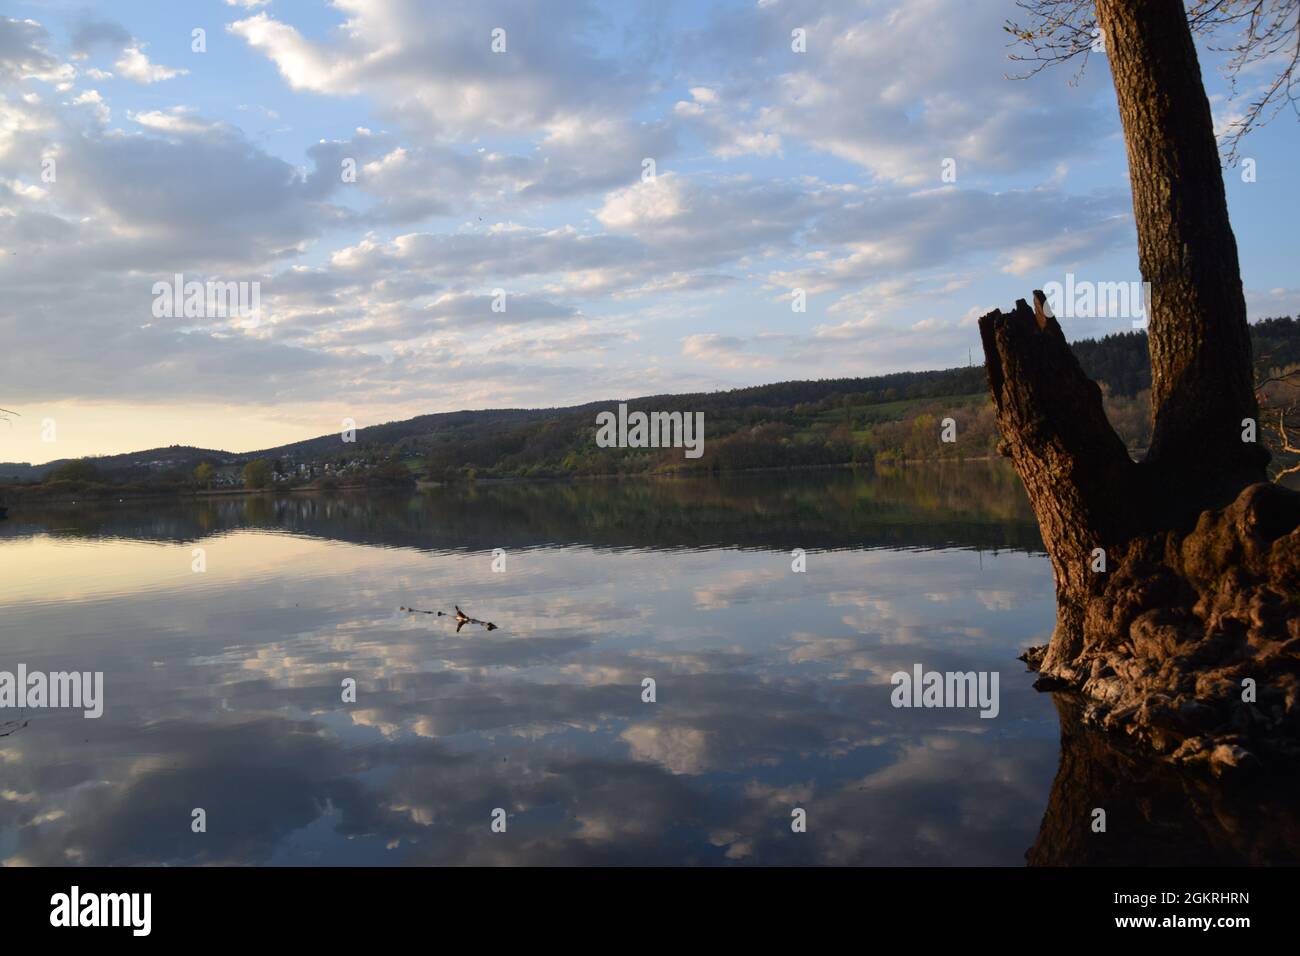 Sonnenuntergang mit wolken und einem baum im wasser gespiegelt am mindelsee bei radolfzell bodensee lake of constance fotografiert mit der nikond3300 Stock Photo